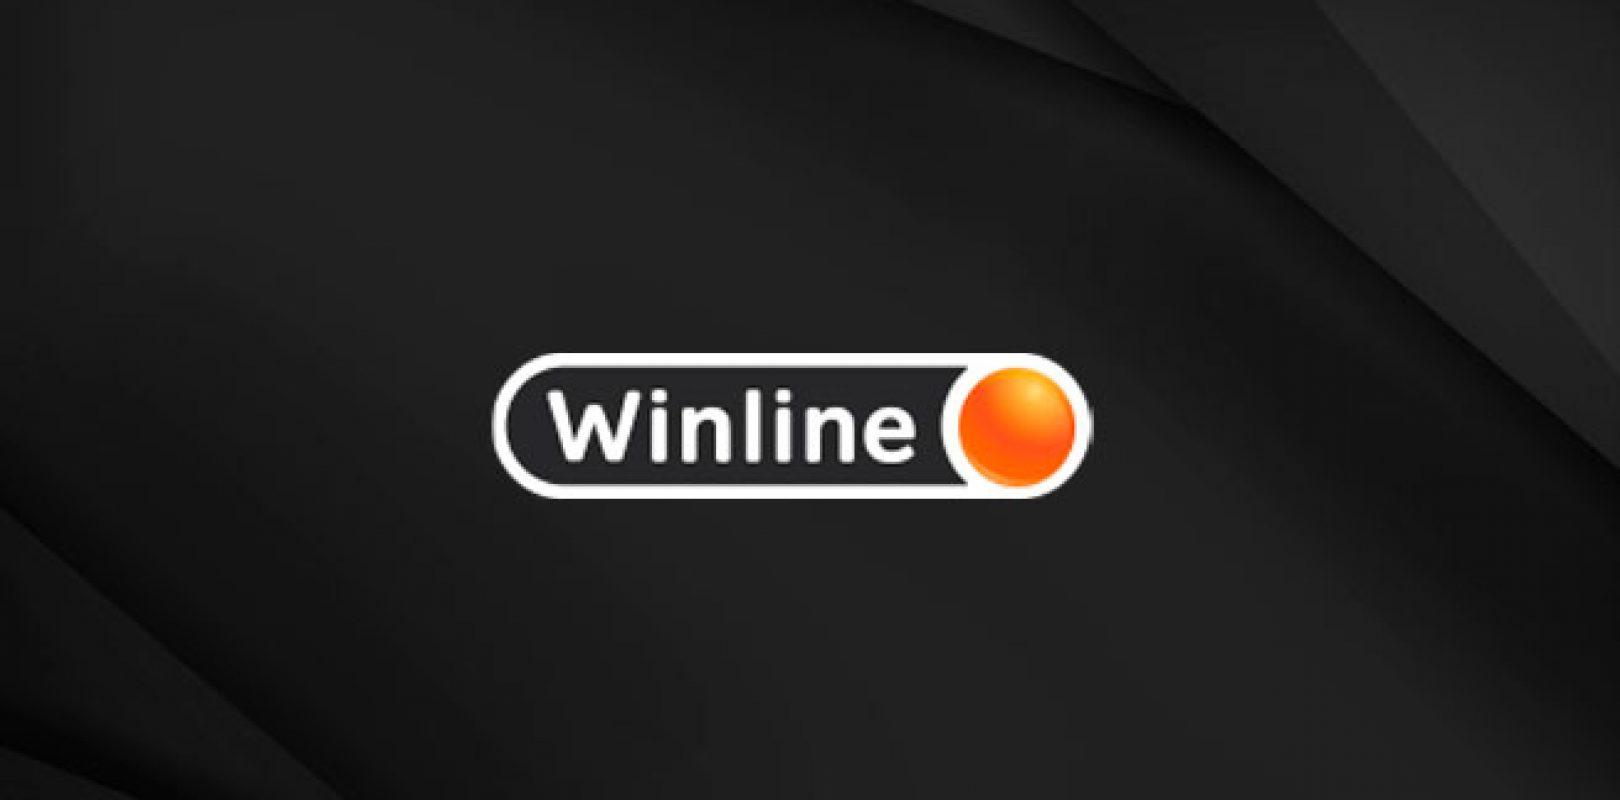 БК Winline анонсировала партнерство c первой медиалигой по CS:GO